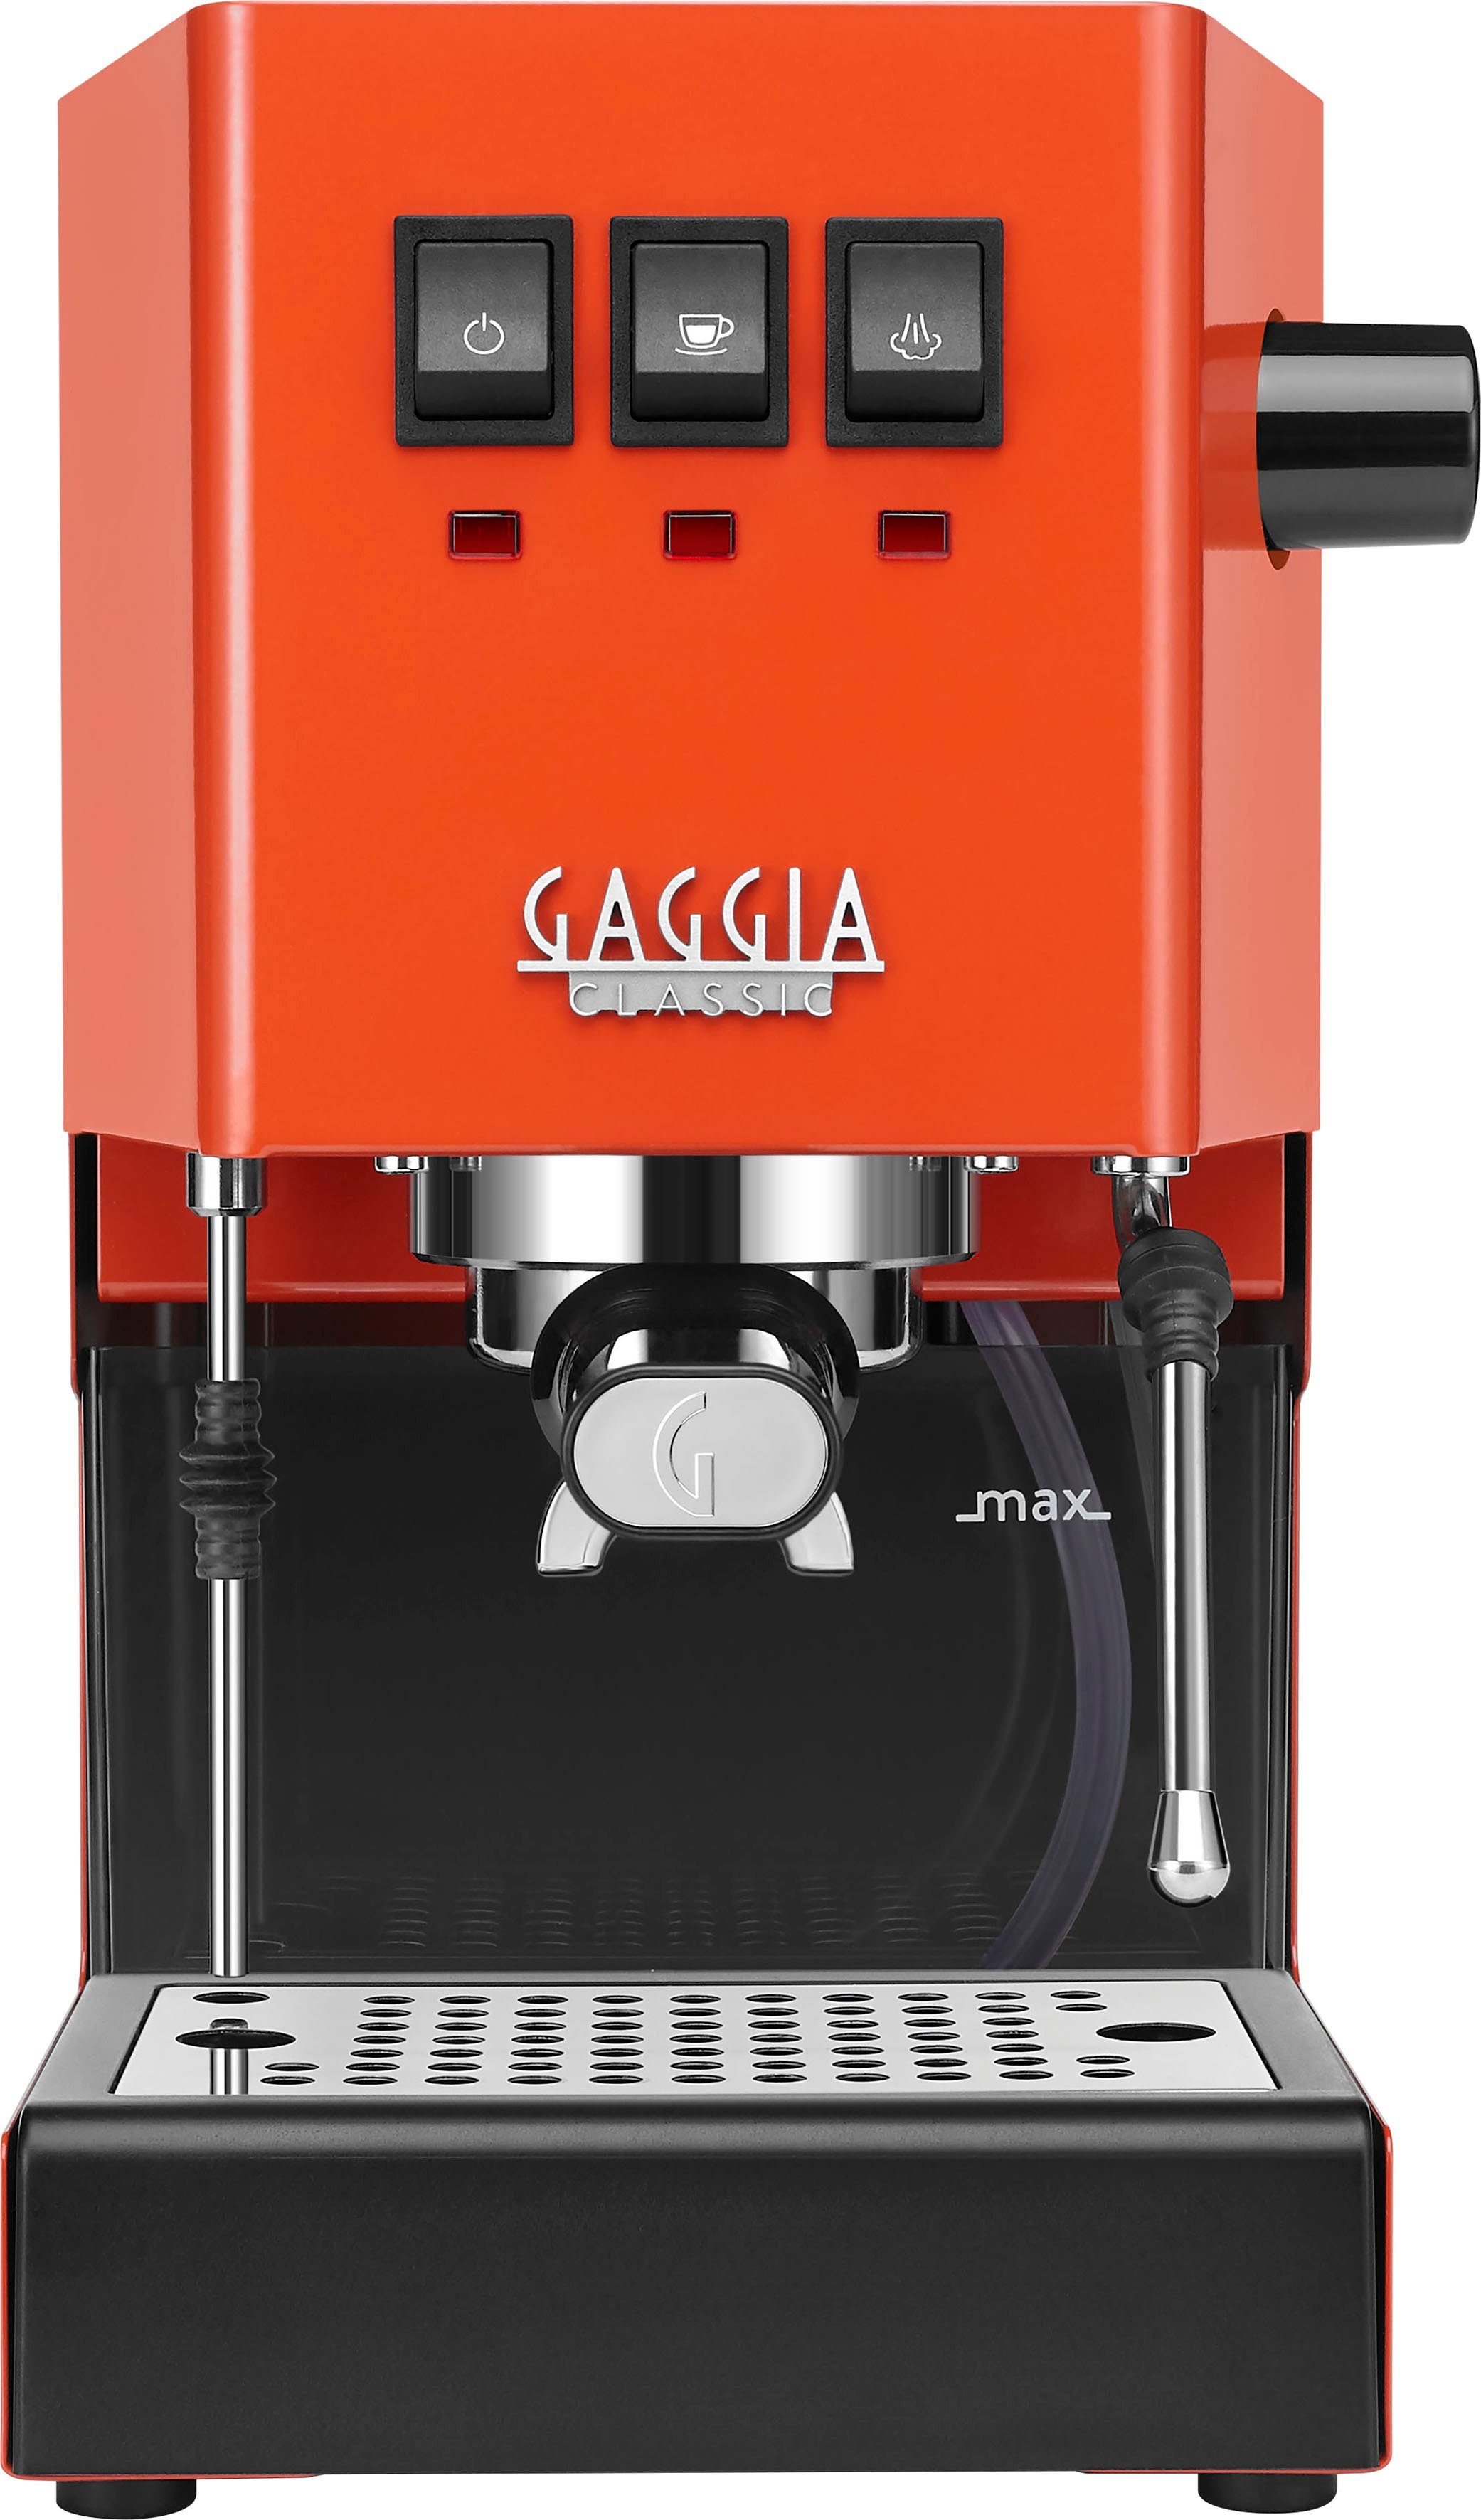 Gaggia Espressomaschine Classic Evo Lobster Red, Siebträger